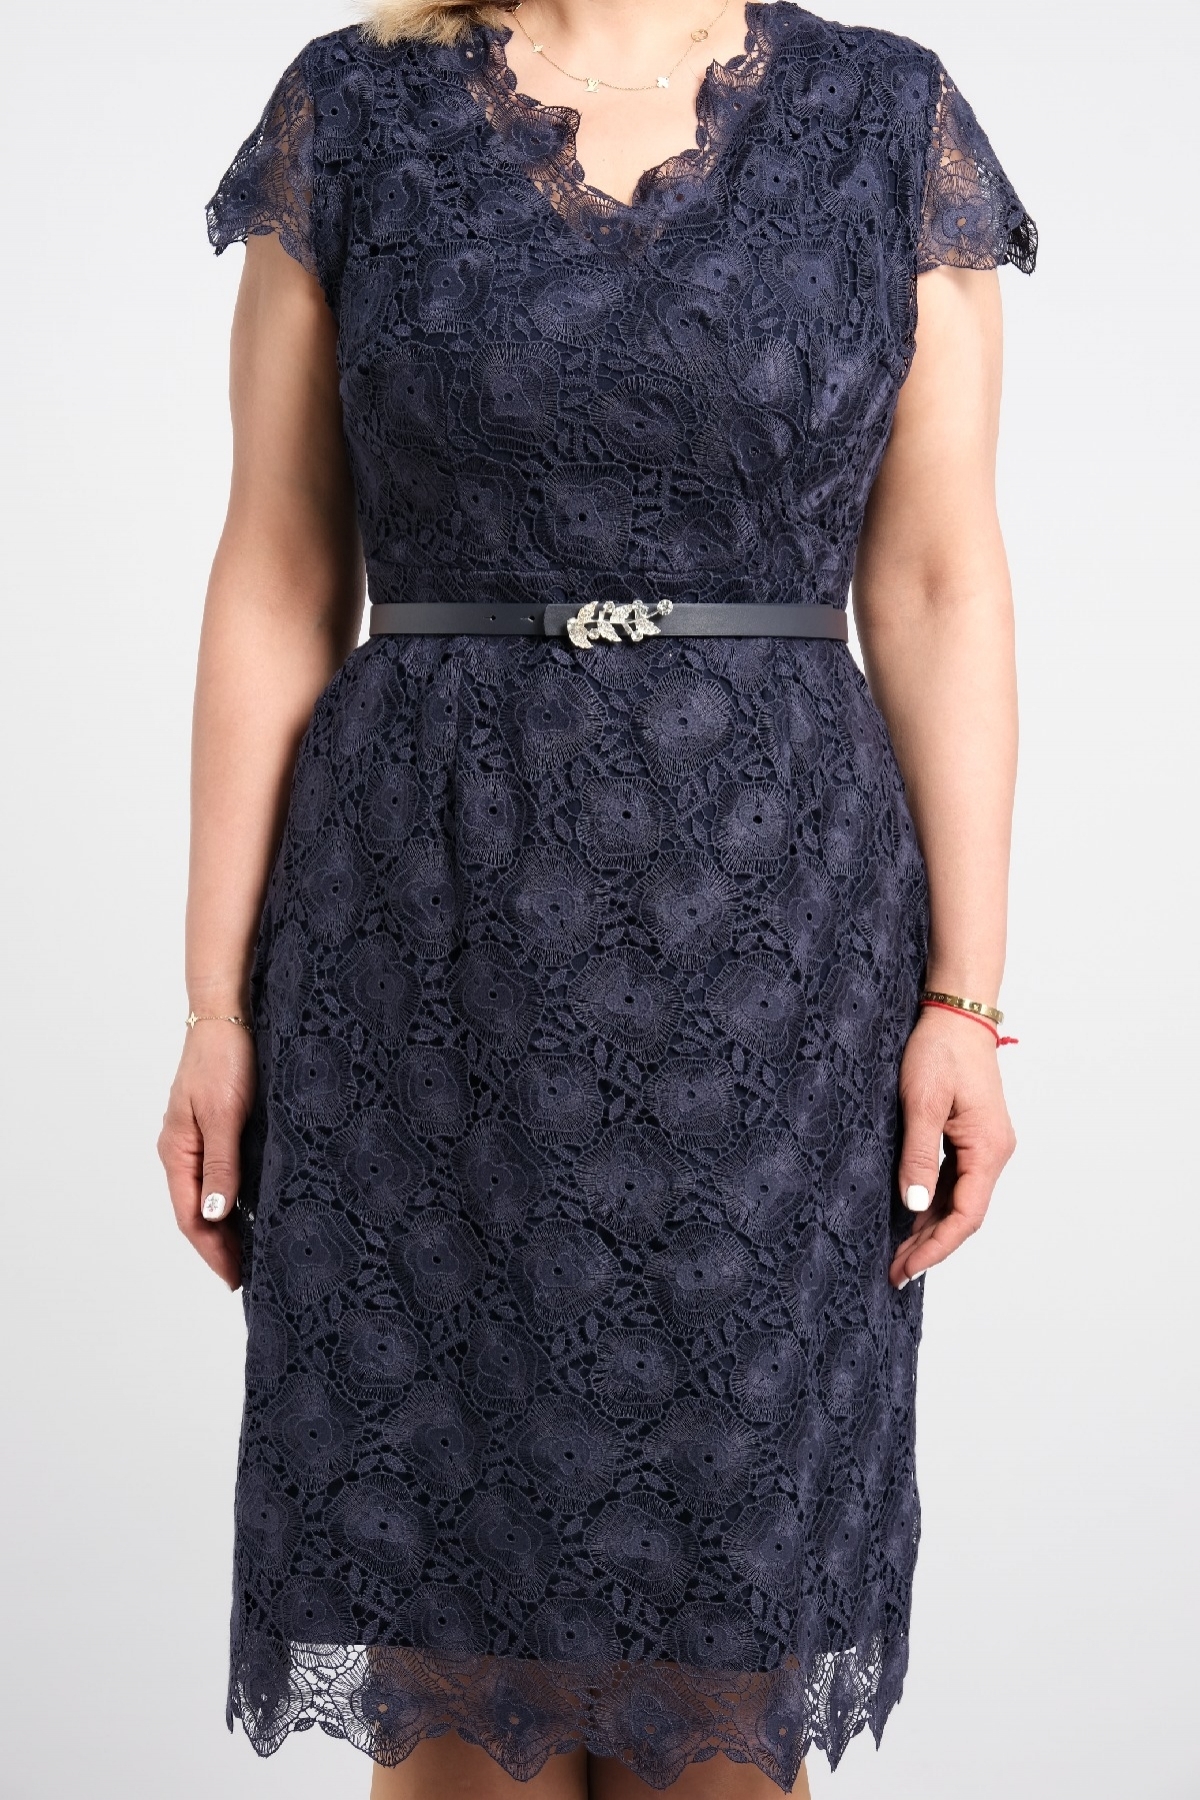 dekolteli çift kat kumaş özellikli motif detaylı dantel ile şık yeni sezon büyük beden elbise 